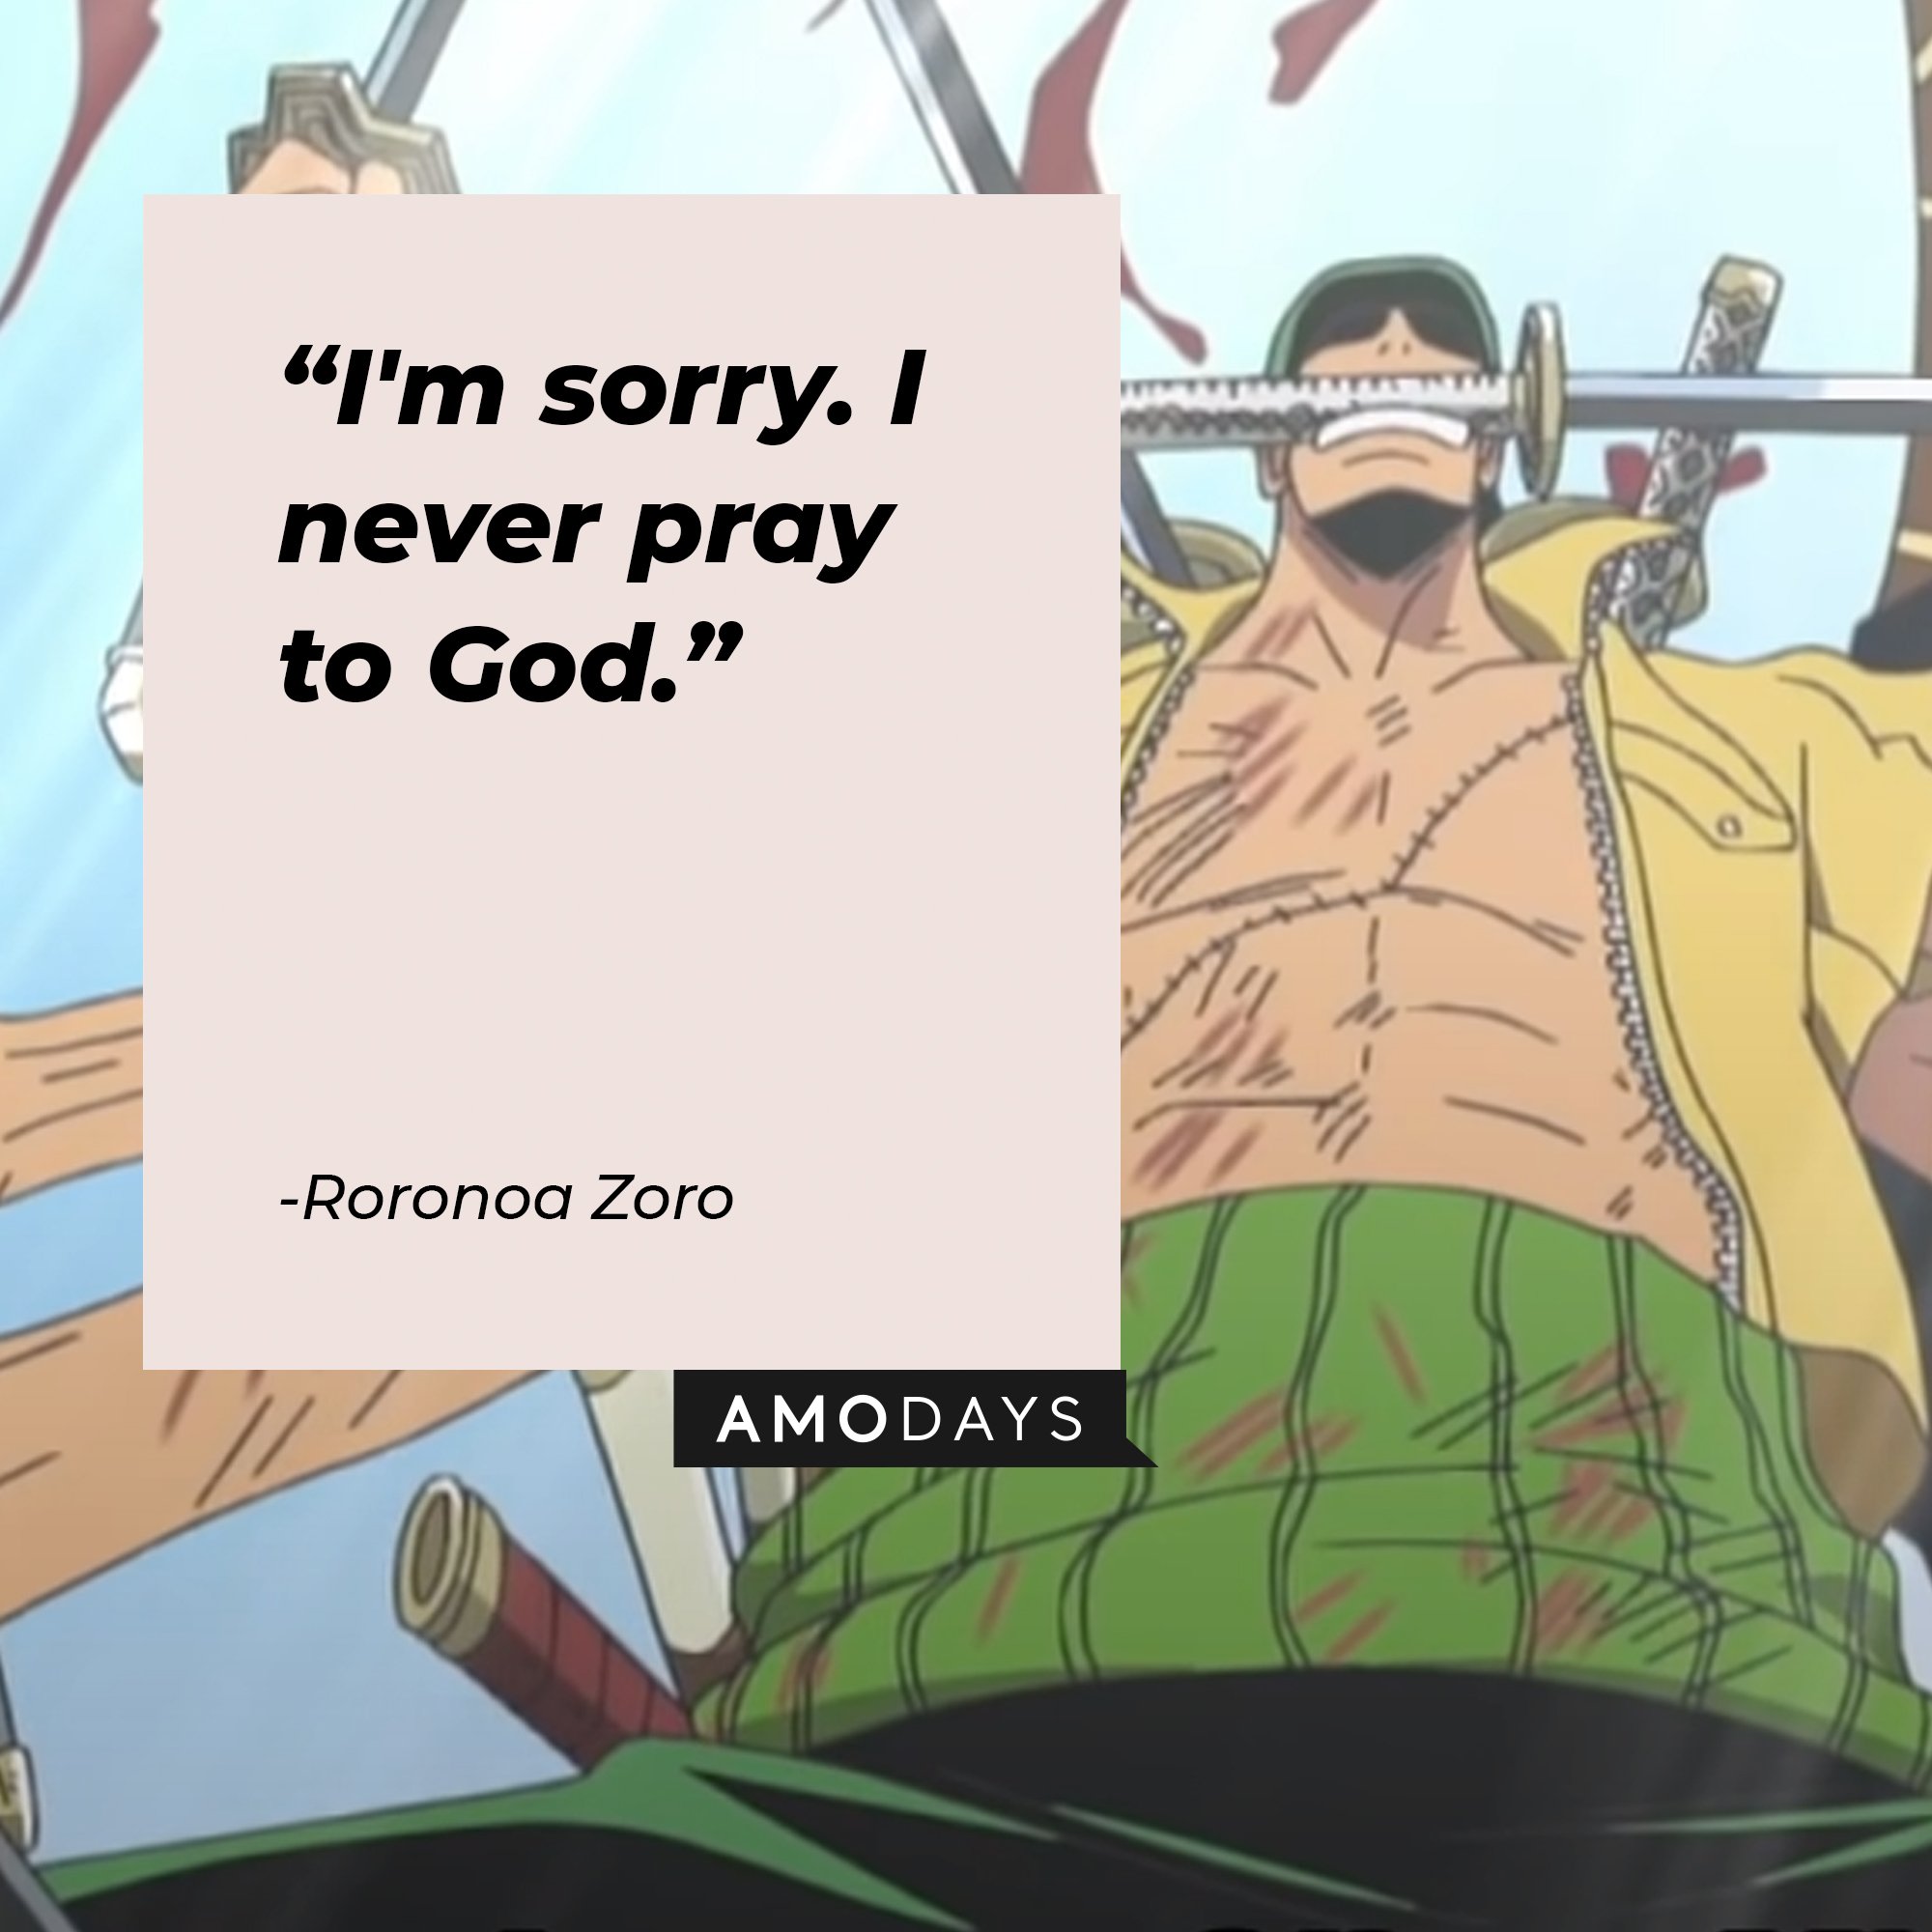 Roronoa Zoro’s quote: "I'm sorry. I never pray to God.” | Image: AmoDays